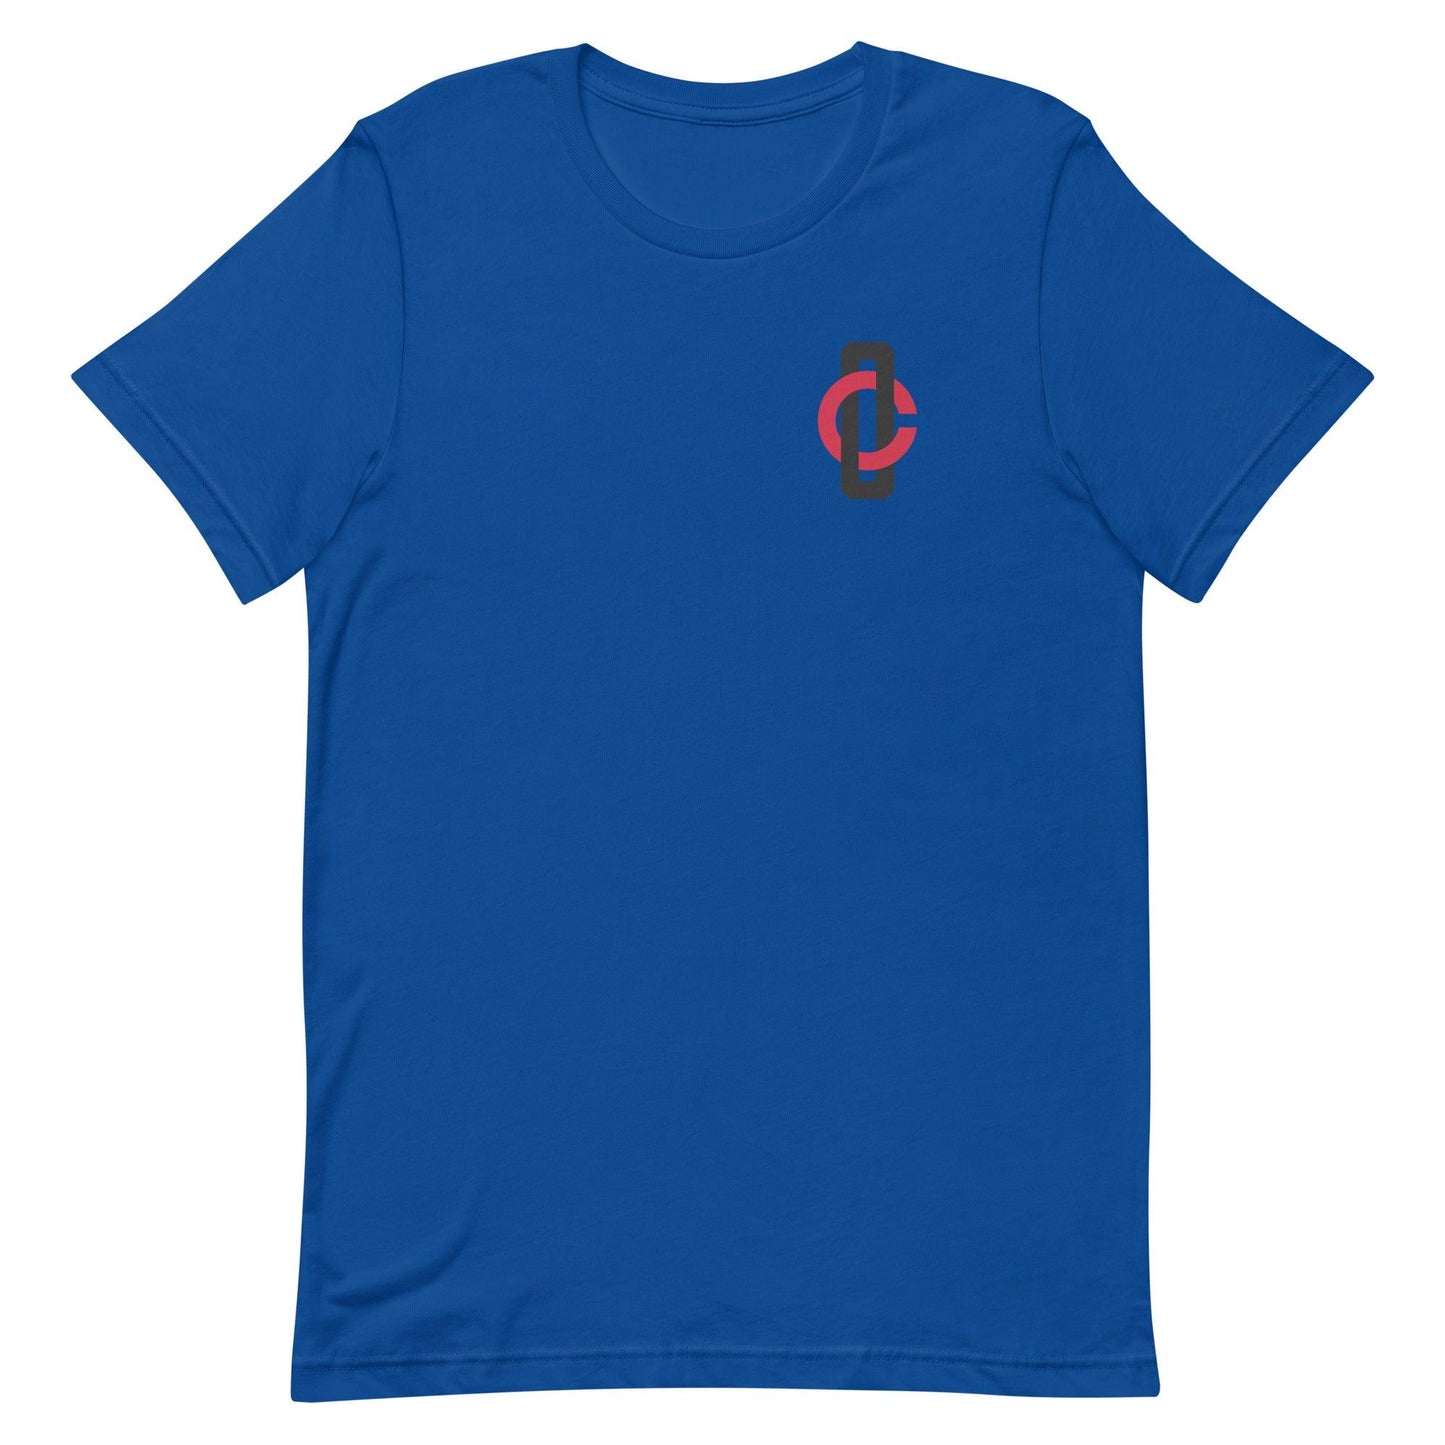 Chris Okey "Essential" t-shirt - Fan Arch